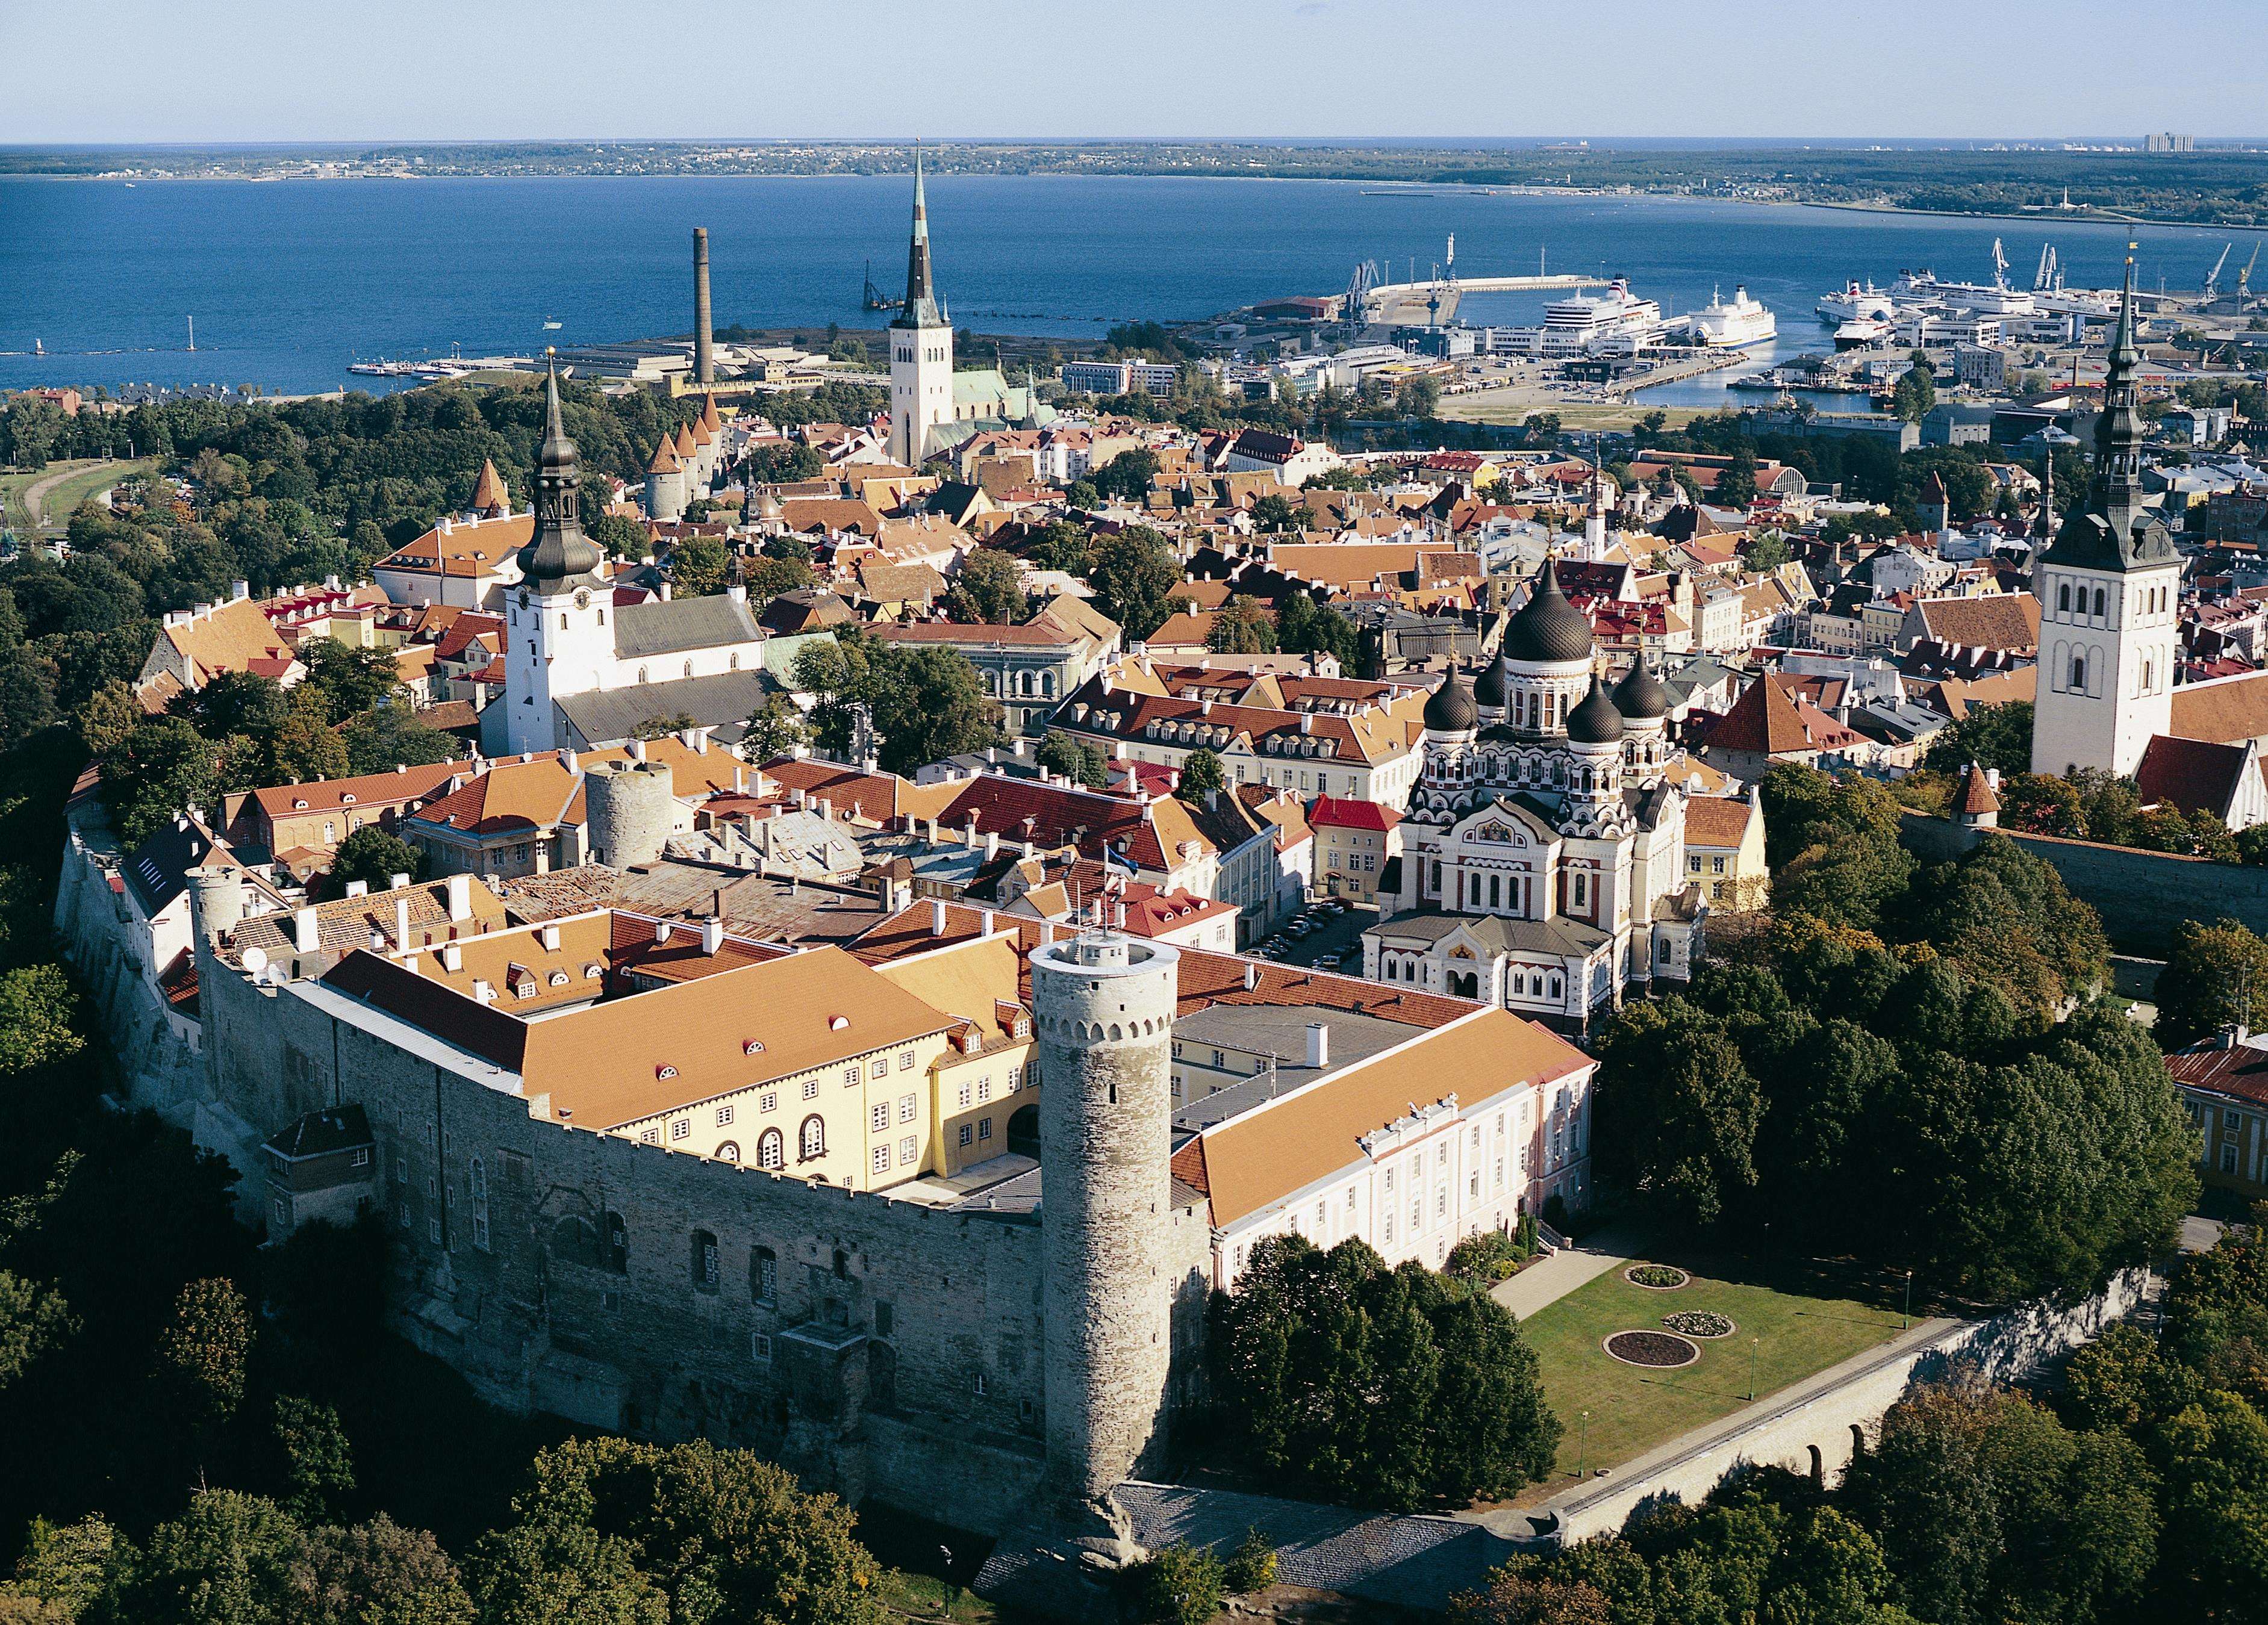 Swissôtel Tallinn